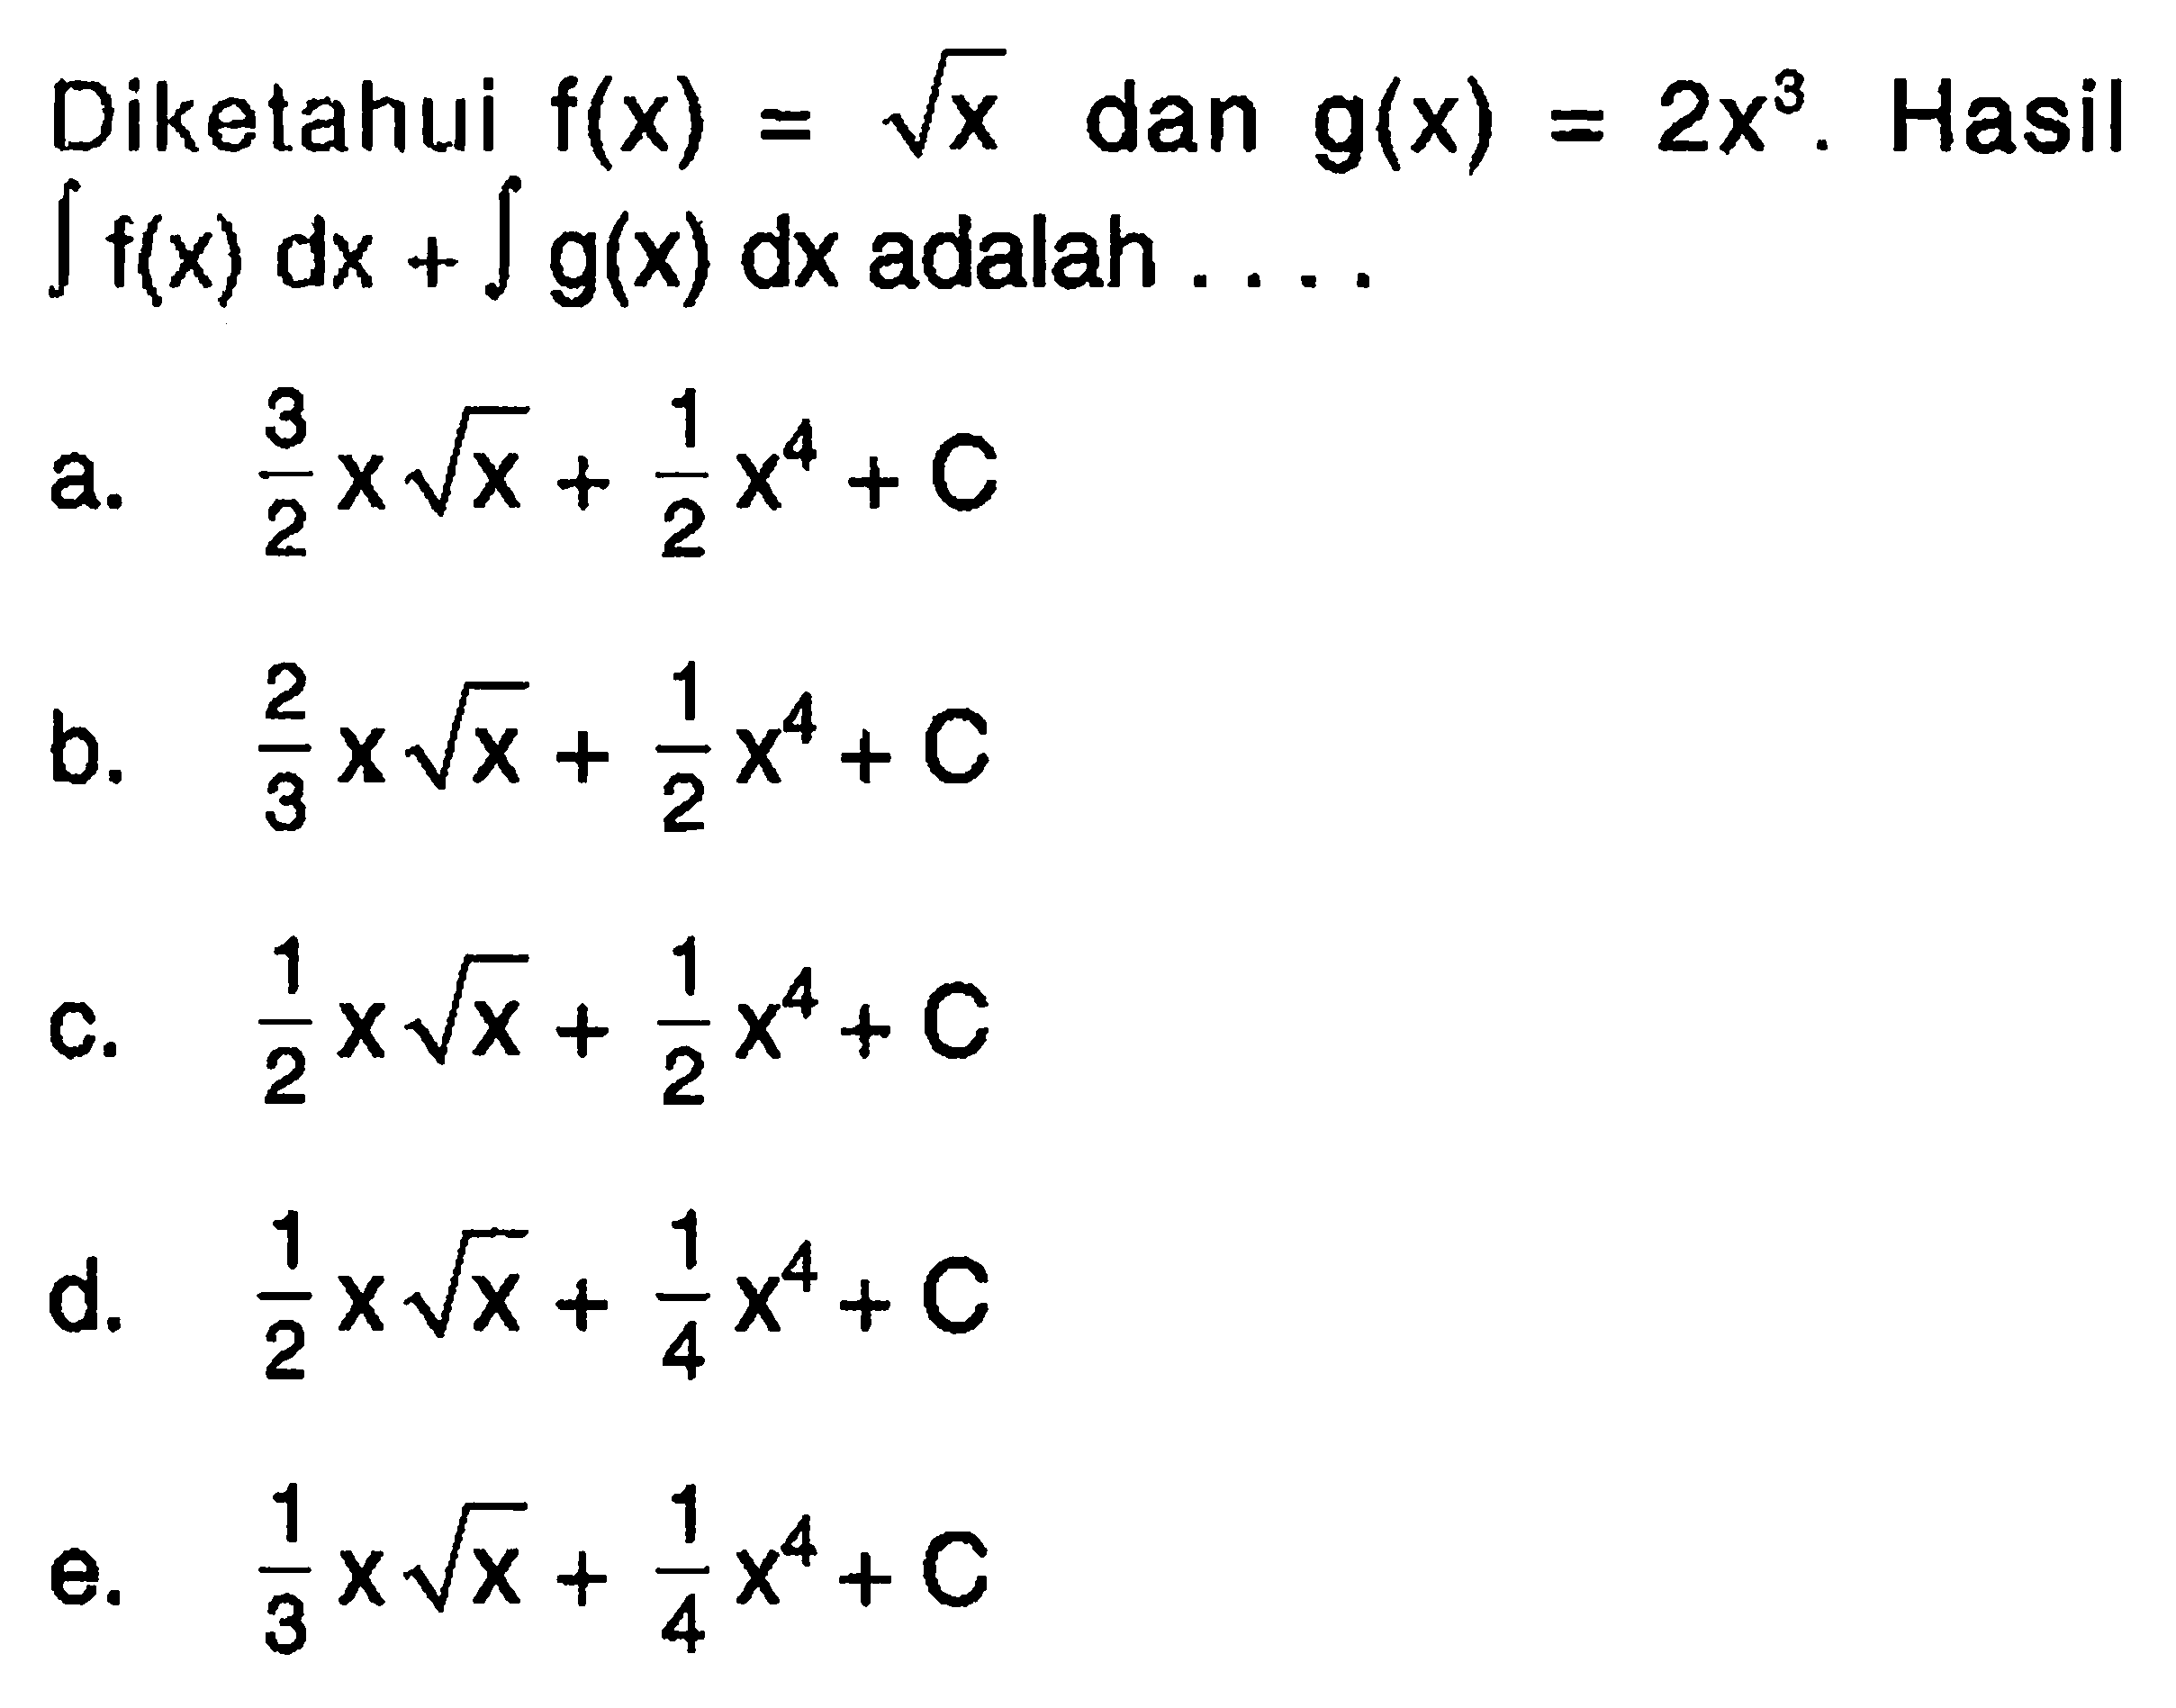 Diketahui f(x)=akar(x) dan g(x)=2x^3. Hasil integral f(x) dx+integral g(x) dx adalah ...